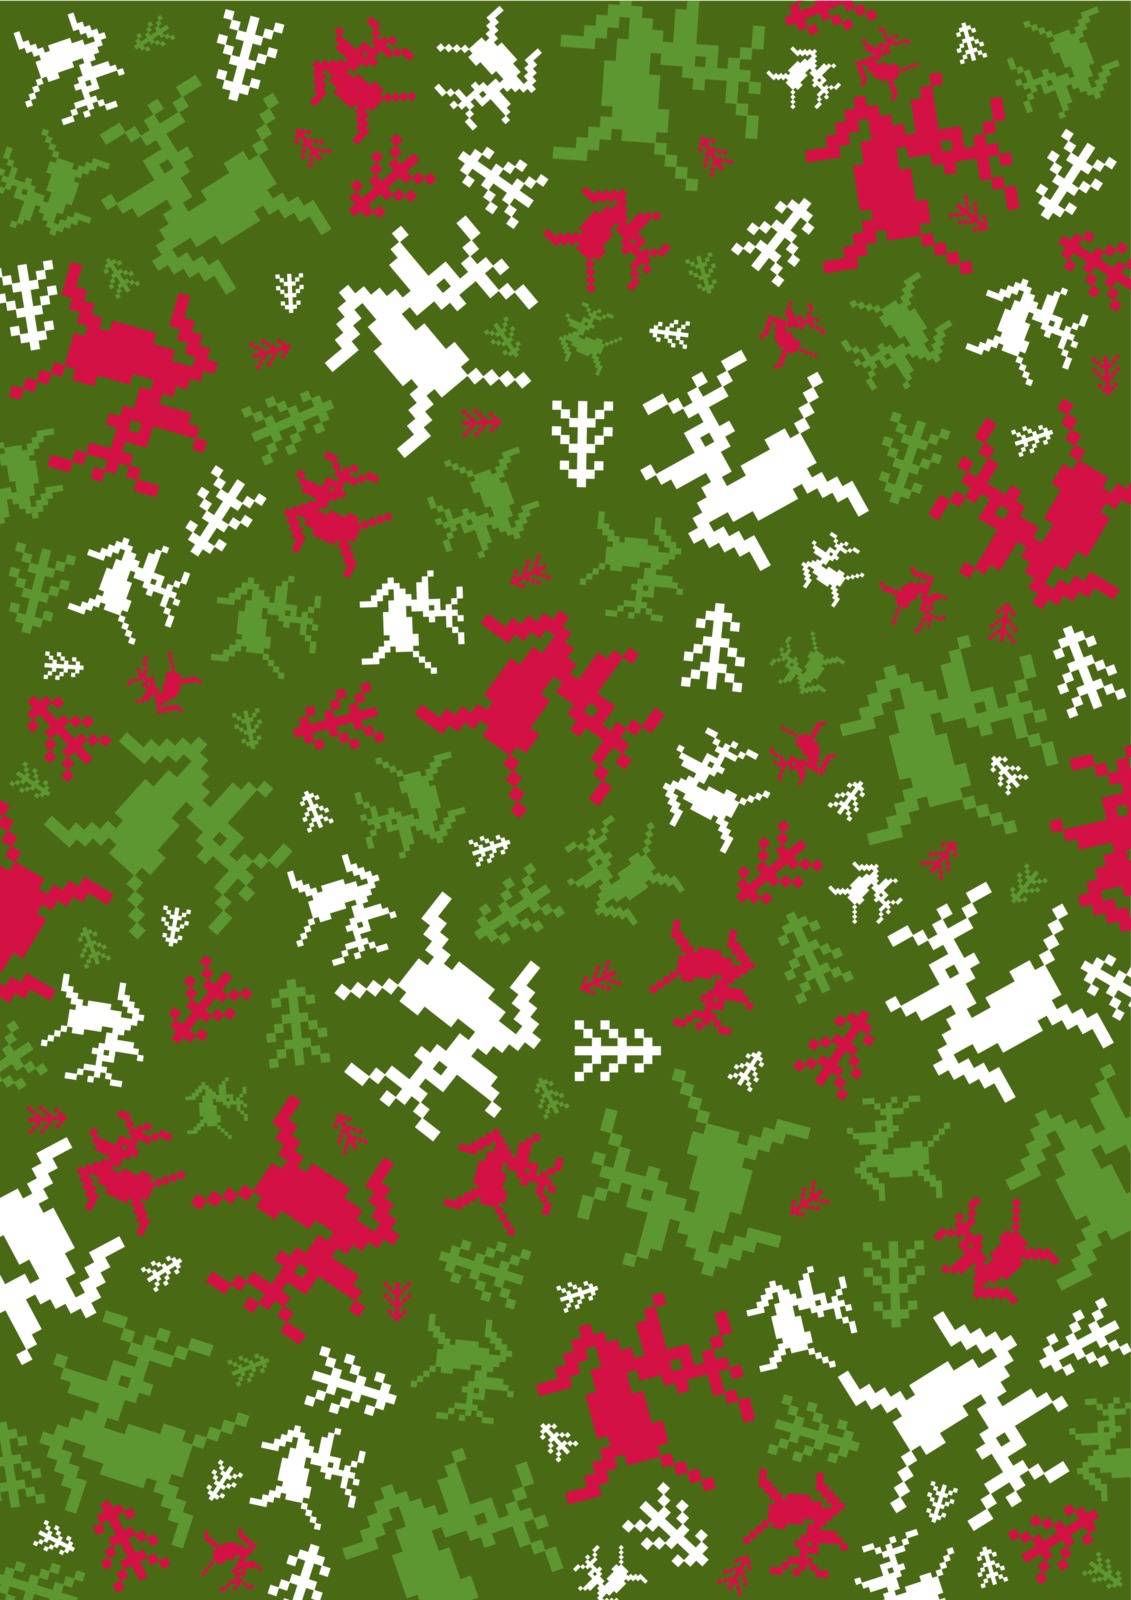 Abstract Reindeer Pattern by markmurphycreative